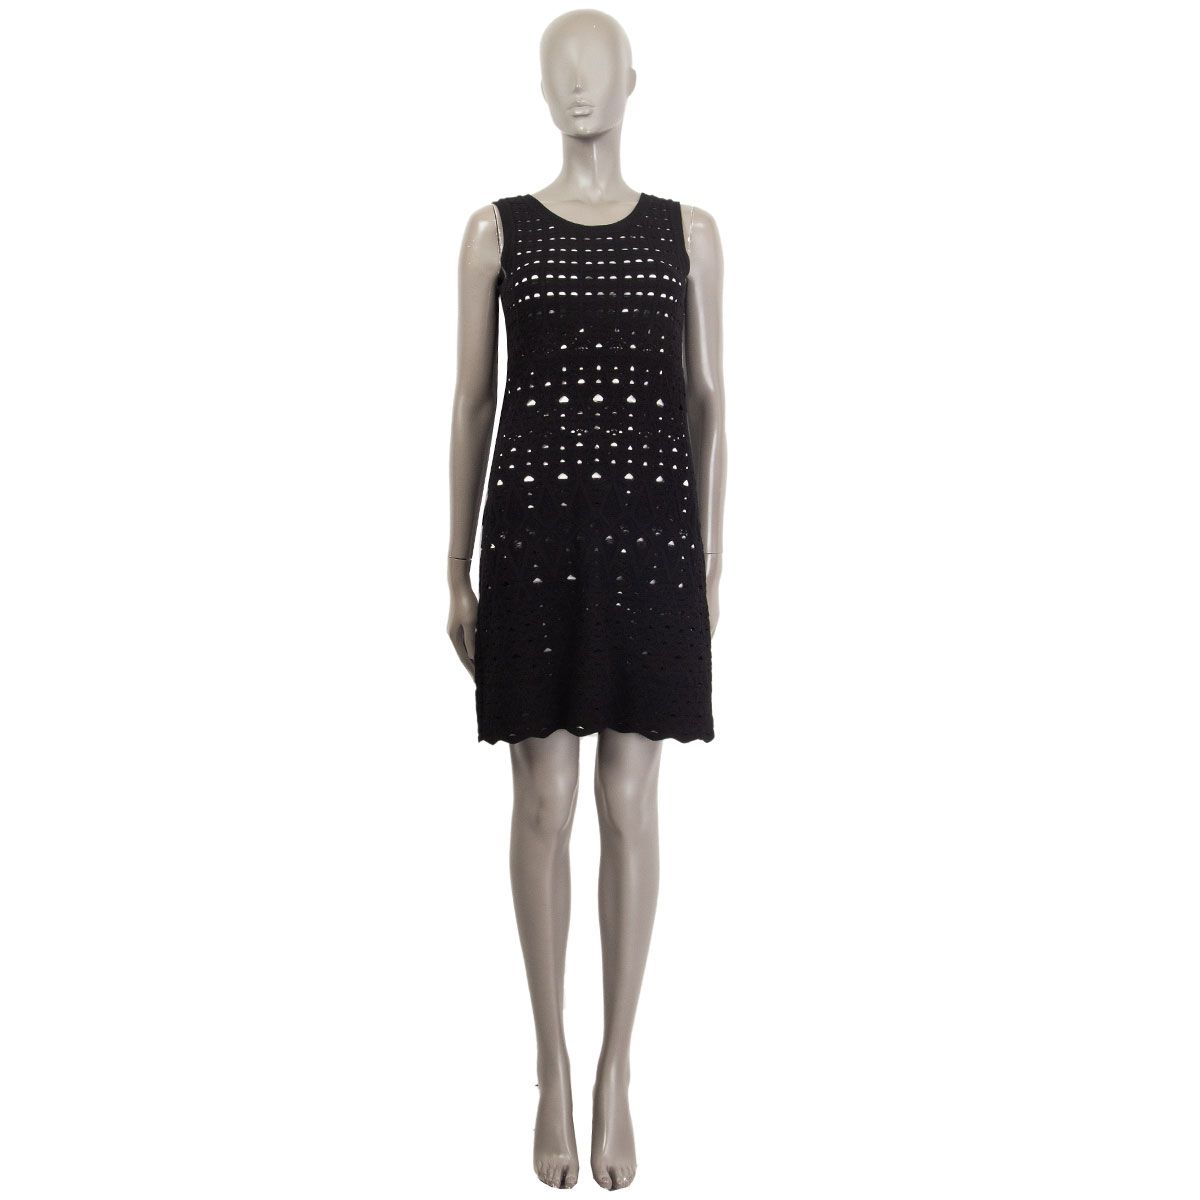 Chanel Sleeveless Crochet Dress Black White